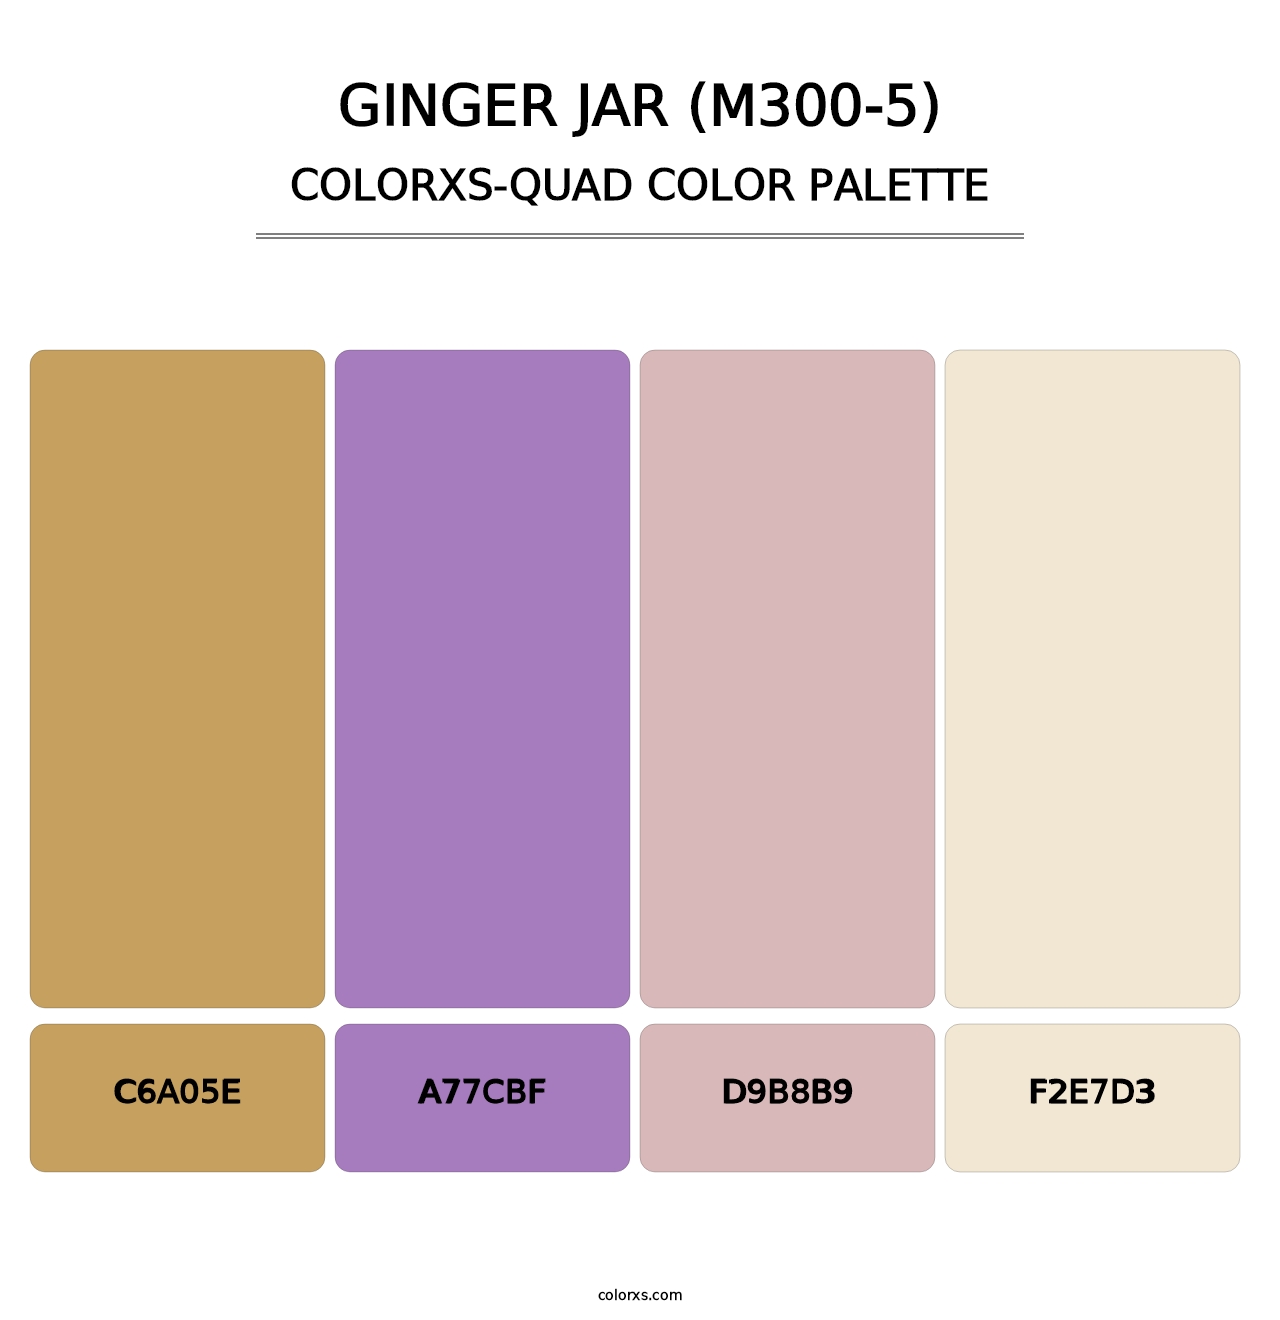 Ginger Jar (M300-5) - Colorxs Quad Palette